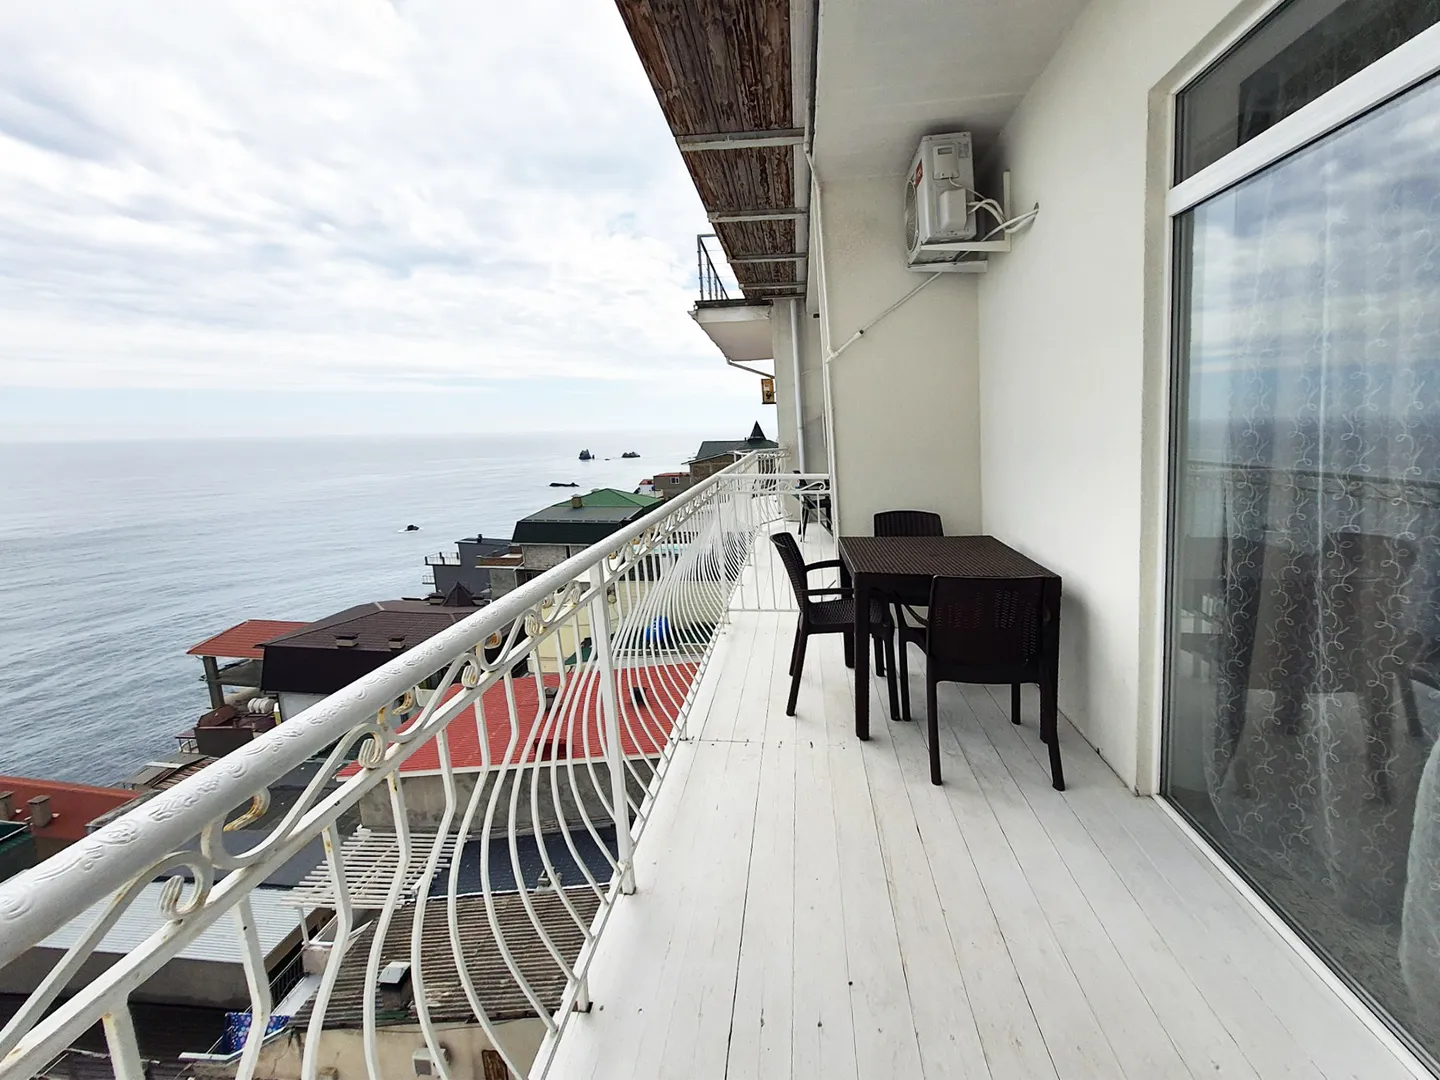 Балкон располагает отдохнуть, полюбоваться на море, выпить чего-нибудь вкусного